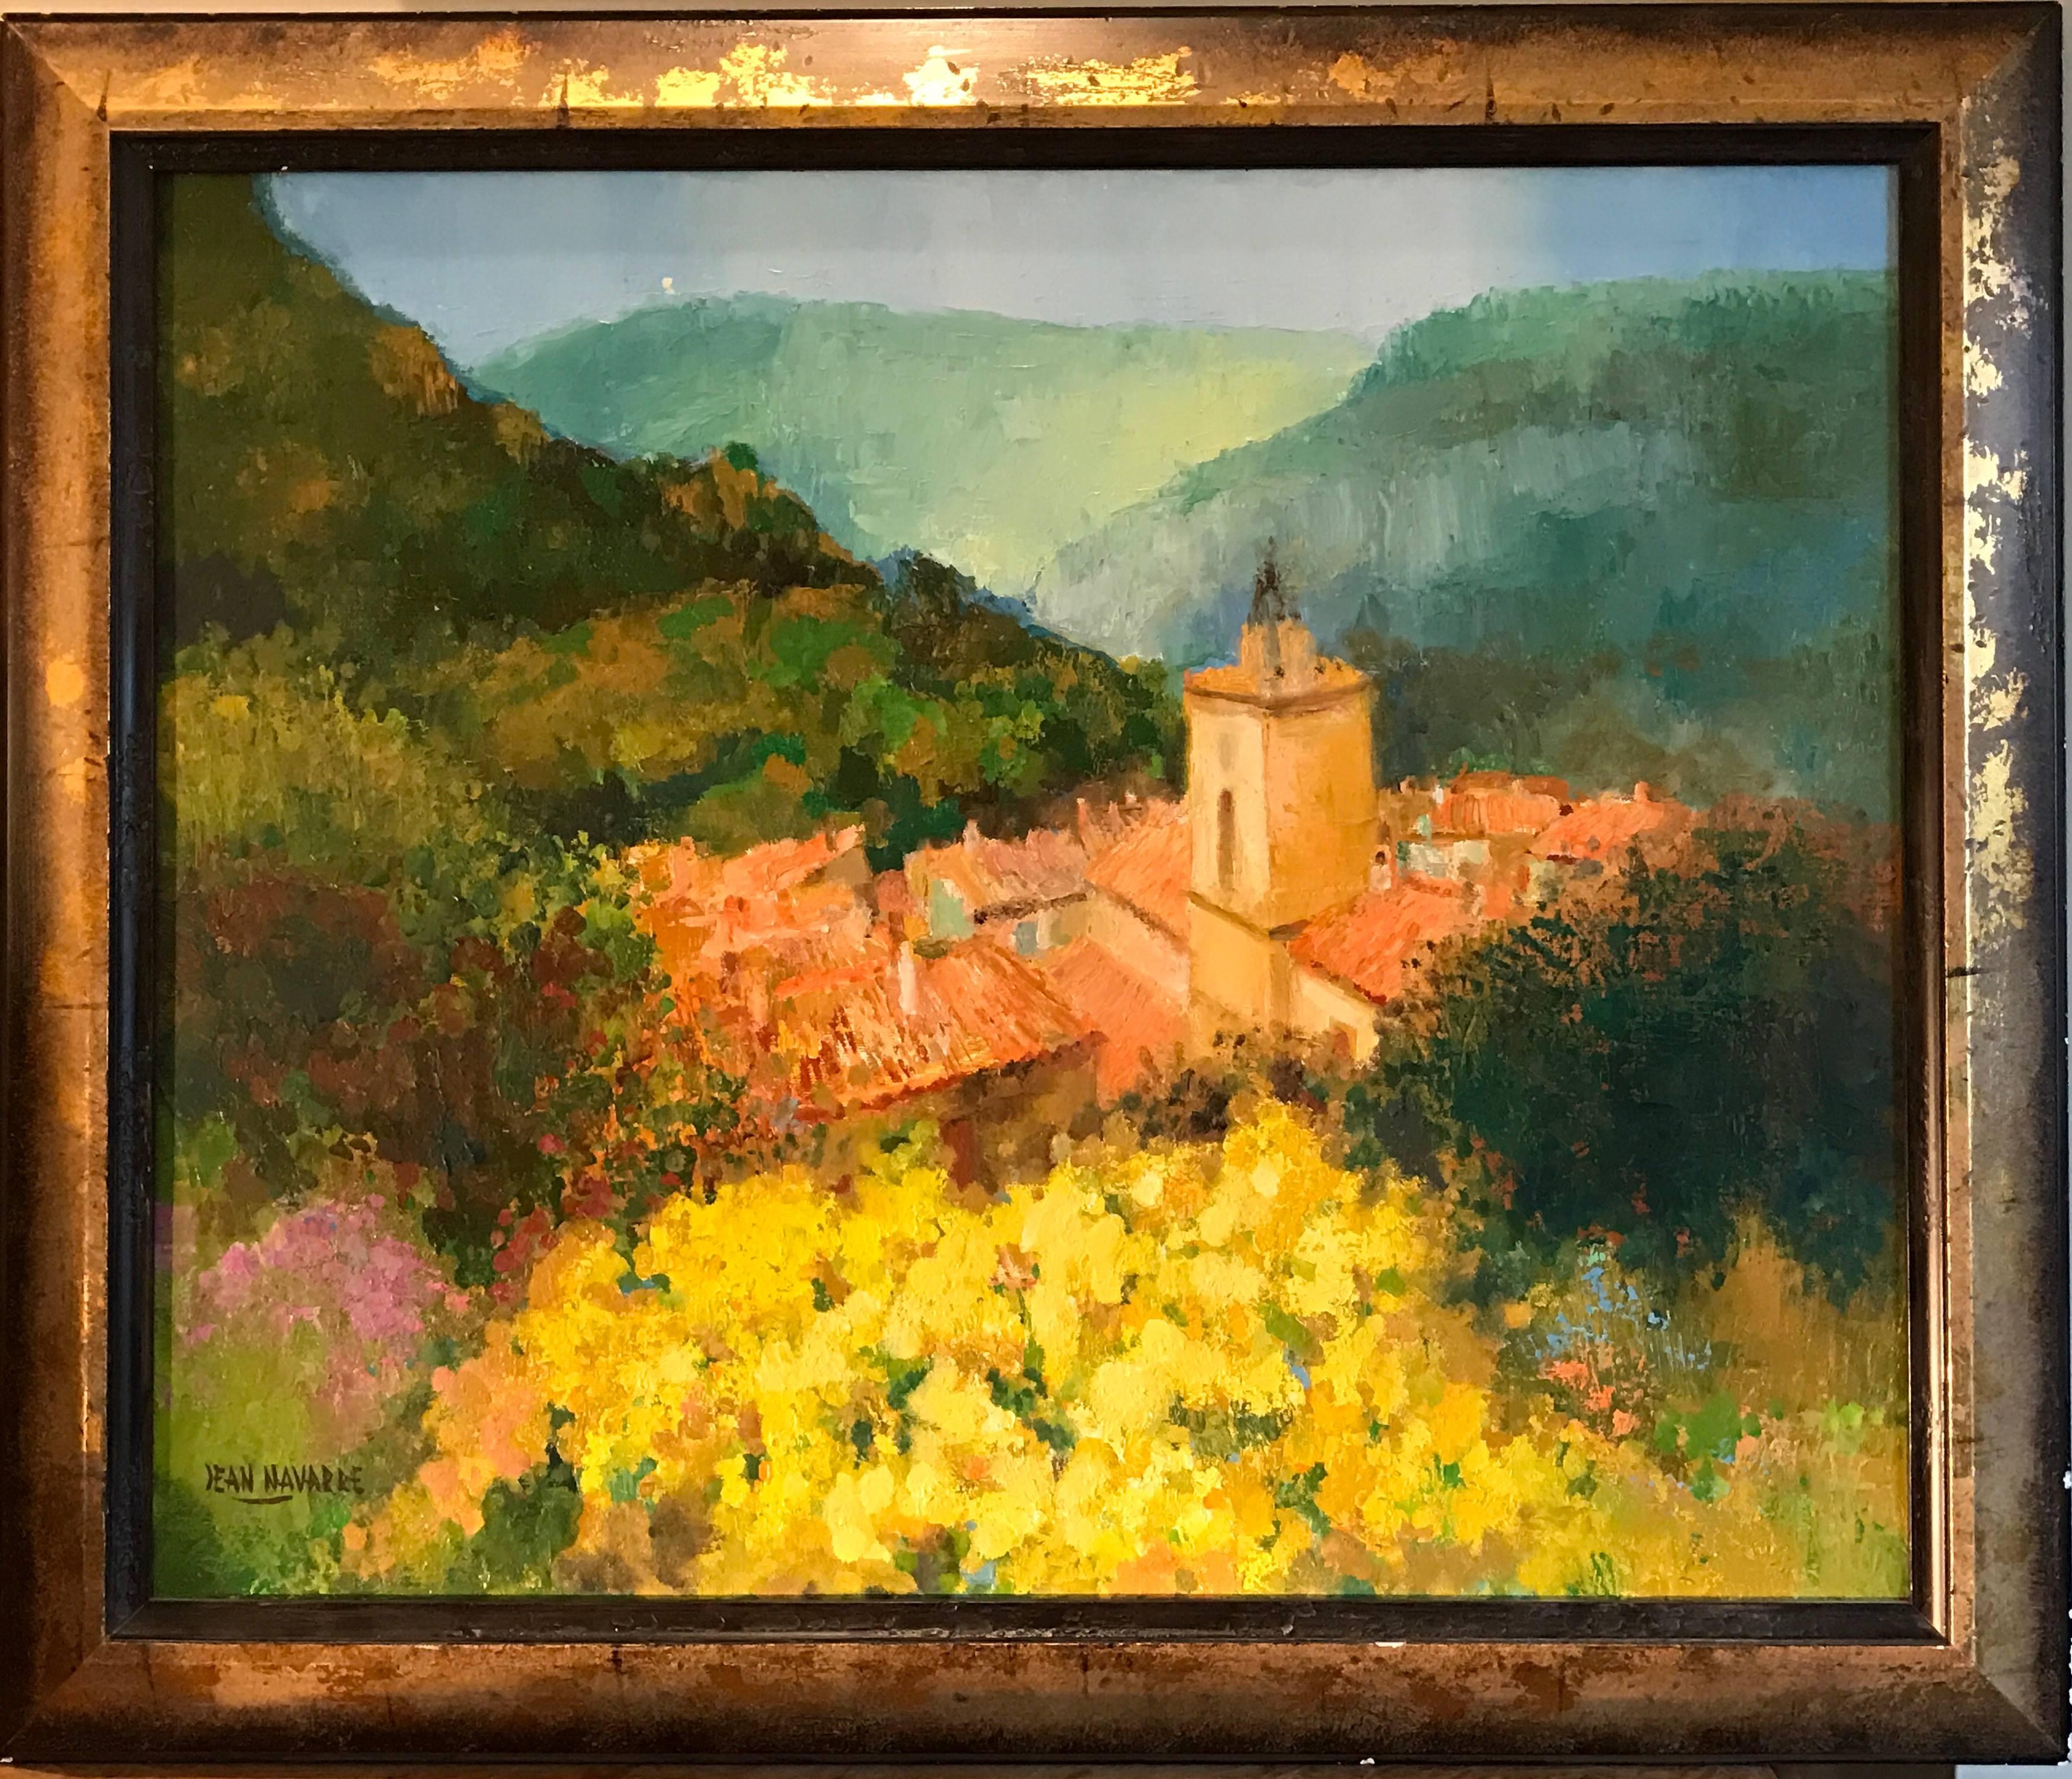 Landscape Painting Jean Navarre - Peinture à l'huile impressionniste française - Paysage provençal, champs d'été